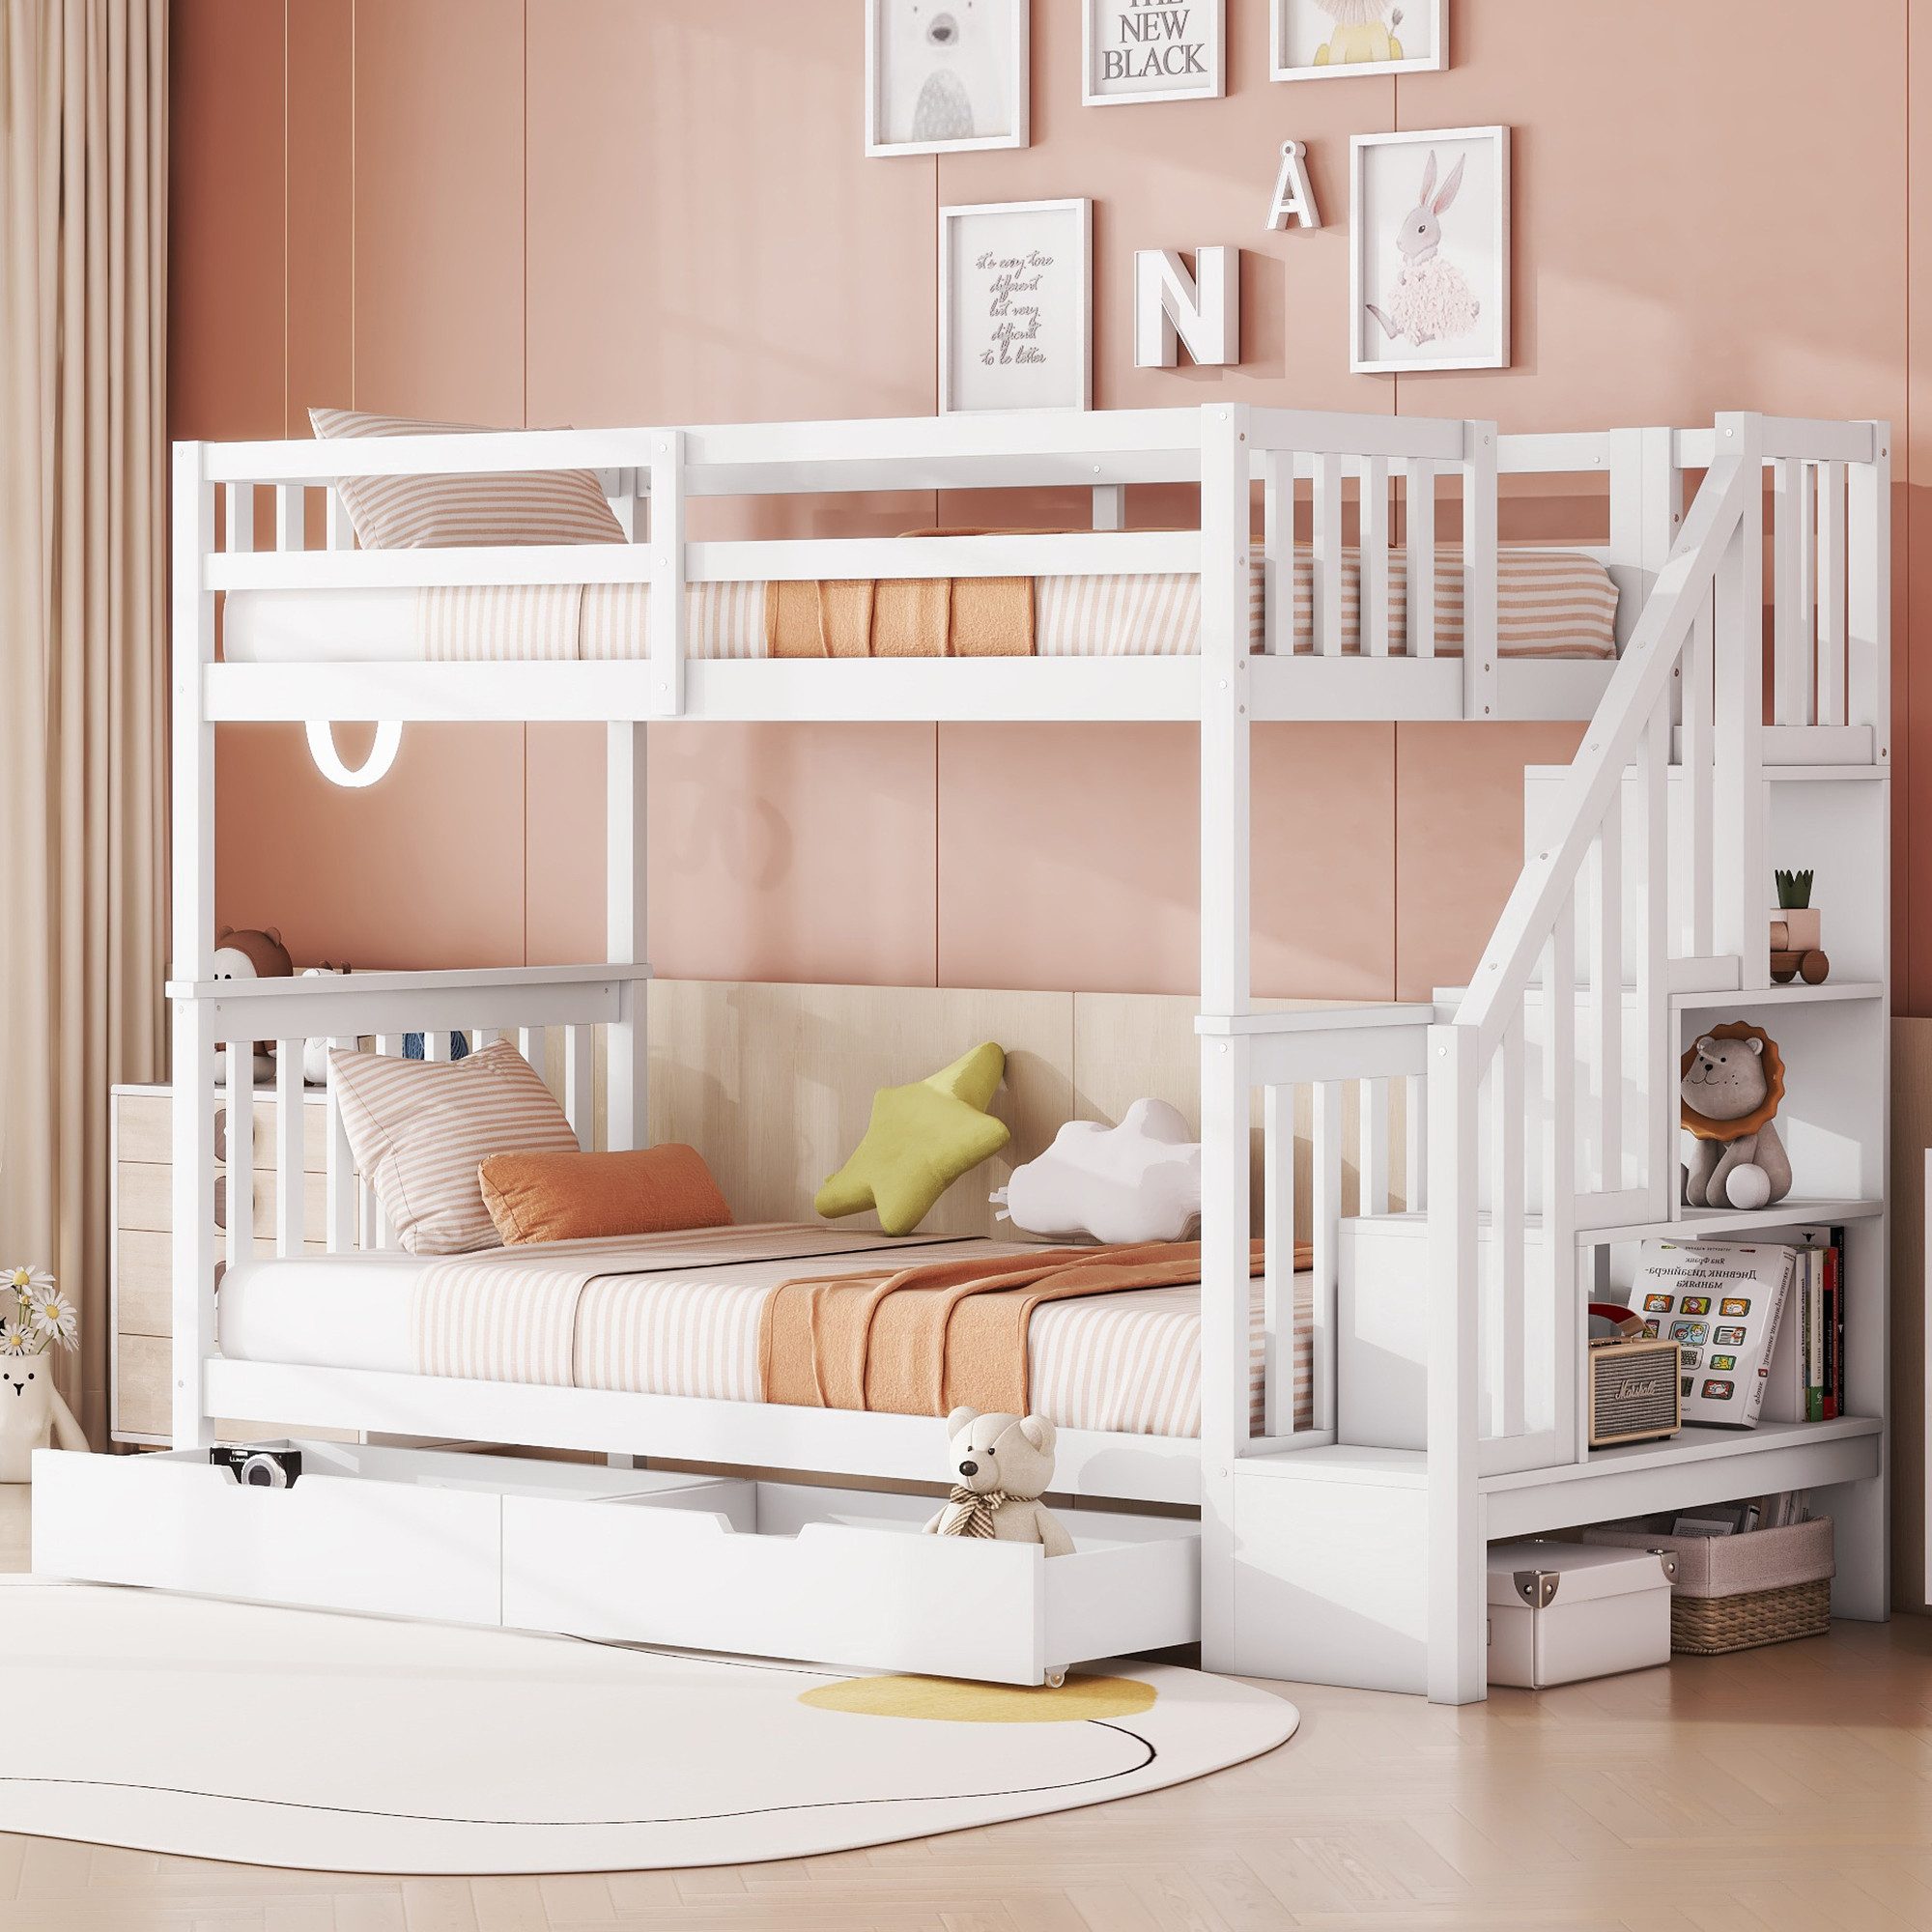 MODFU Etagenbett Kinderbett (Treppenregal, ausgestattet mit zwei Schubladen, hohe Geländer, 90*200cm), ohne Matratze